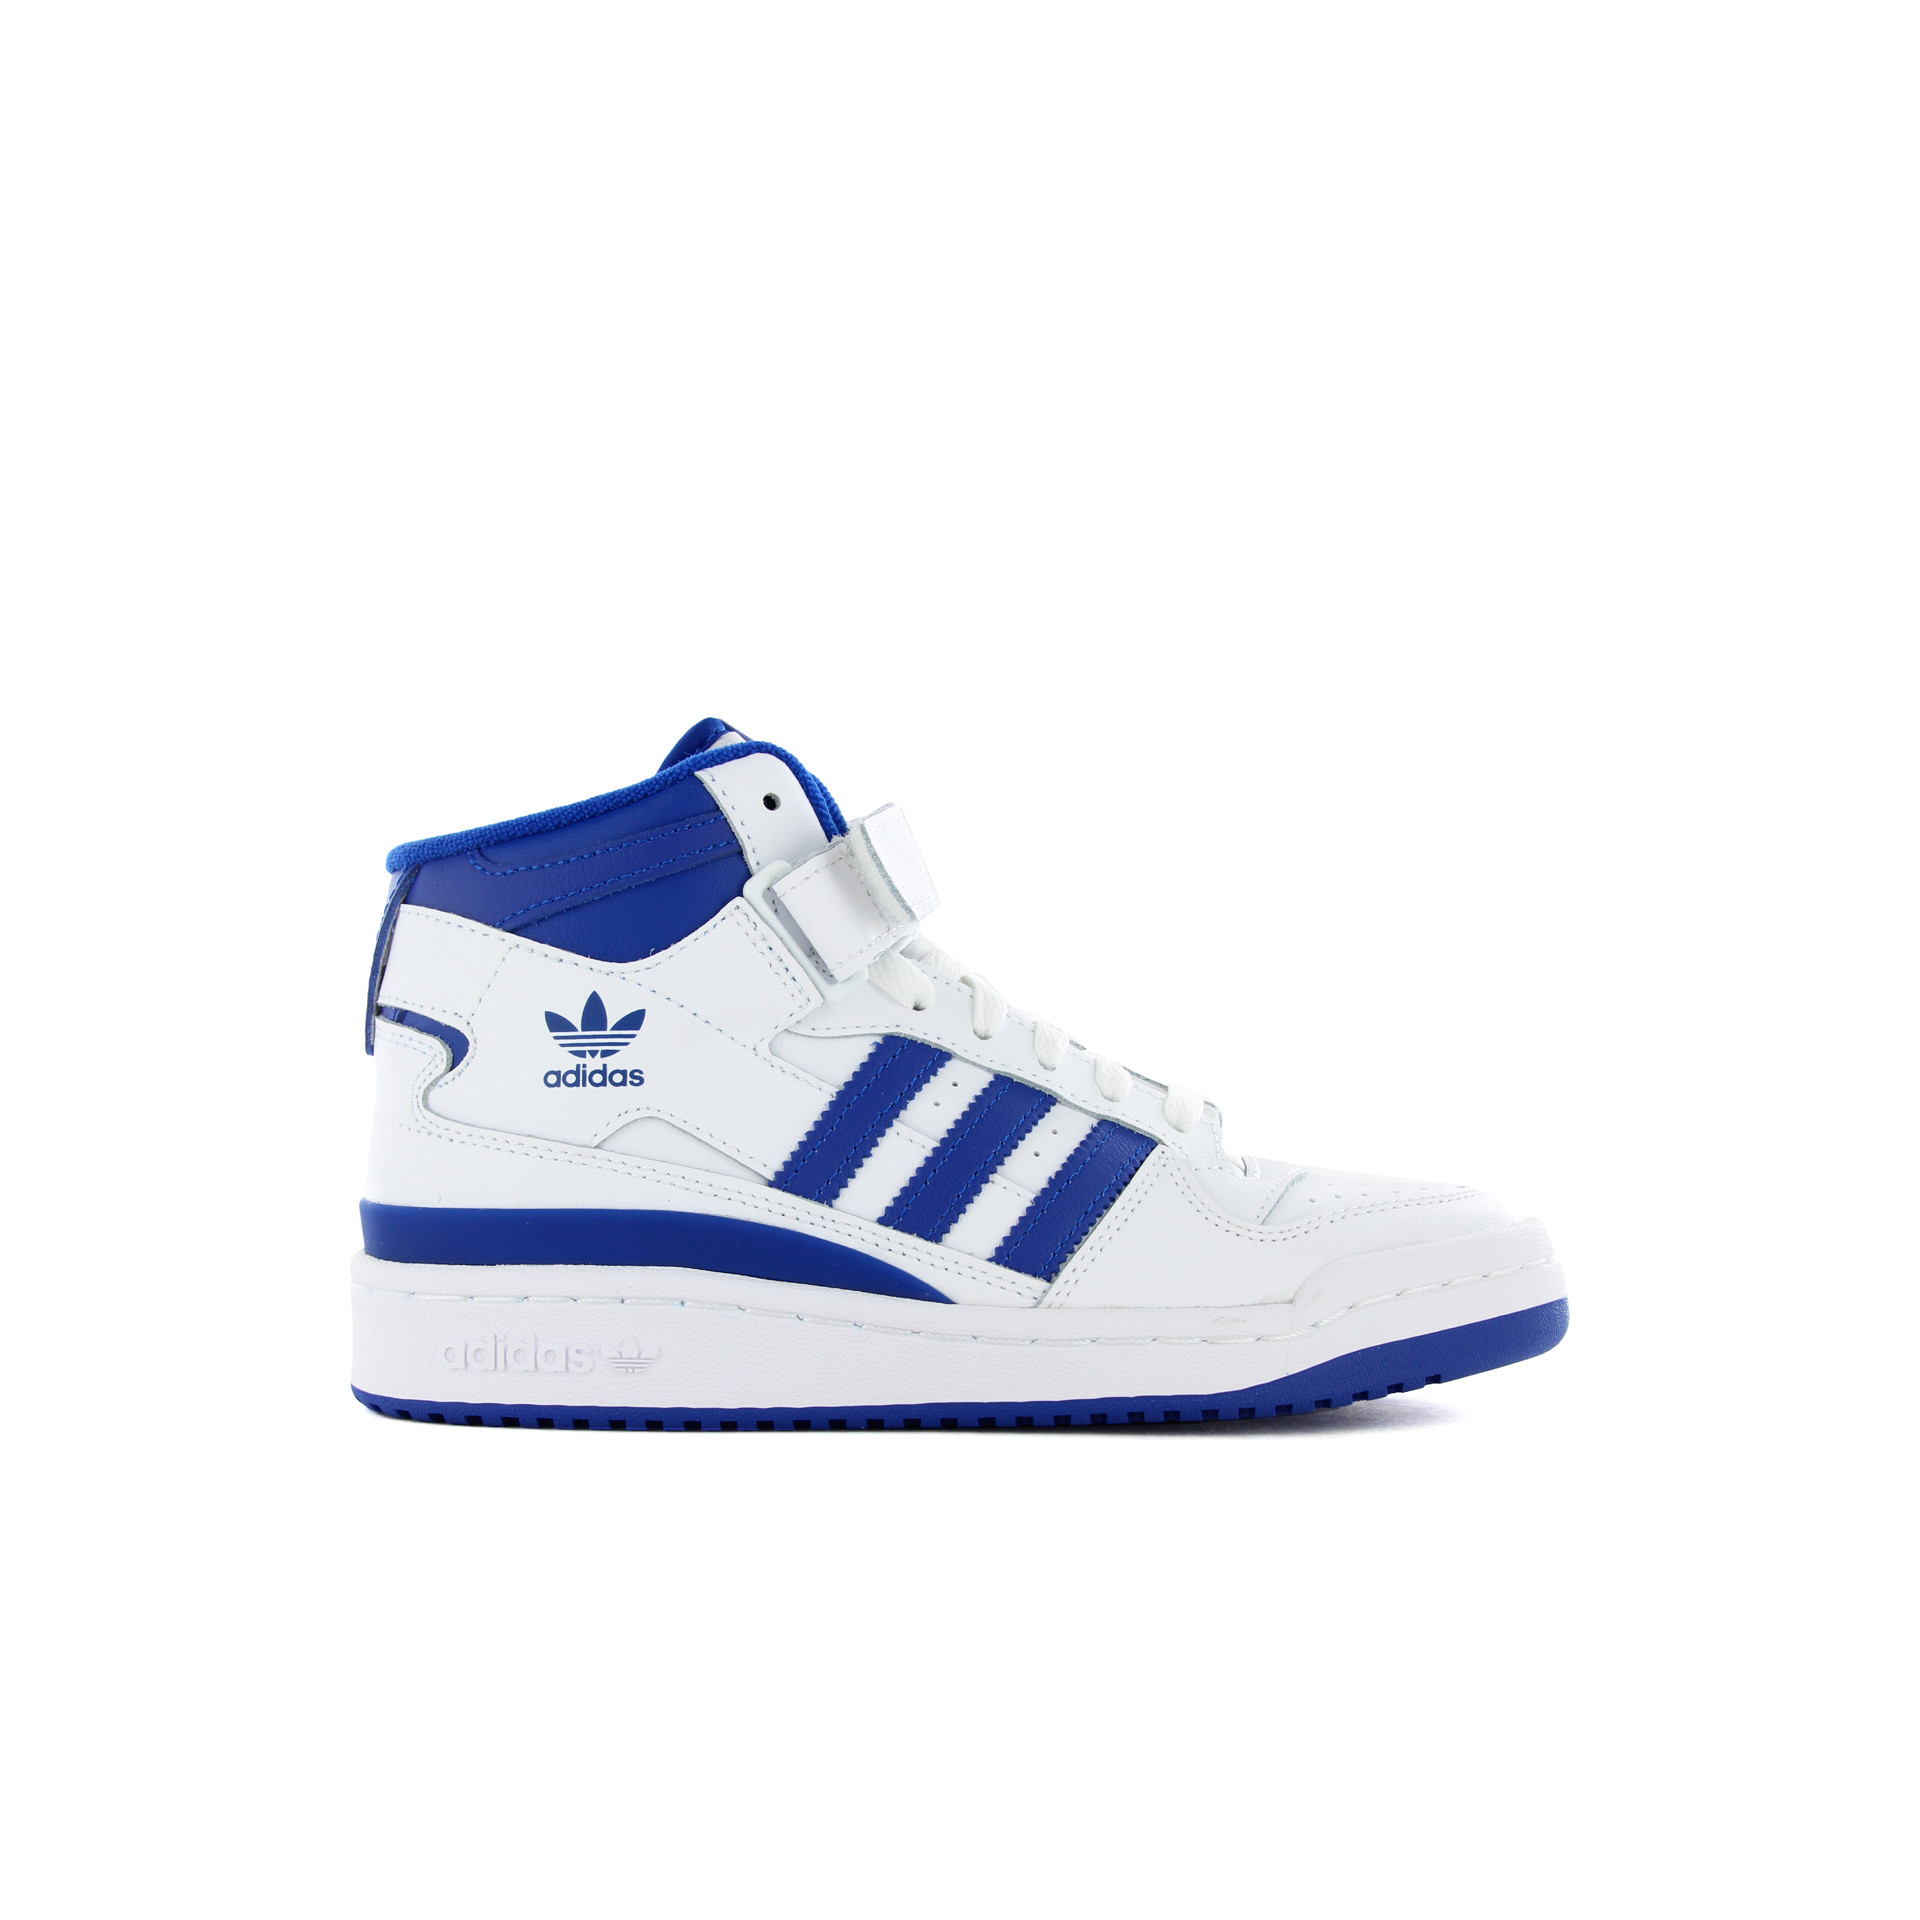 Refrescante Hacer interferencia adidas Forum Mid J blanco zapatillas niños/as tallas 28-38.5 | Dooers  Sneakers